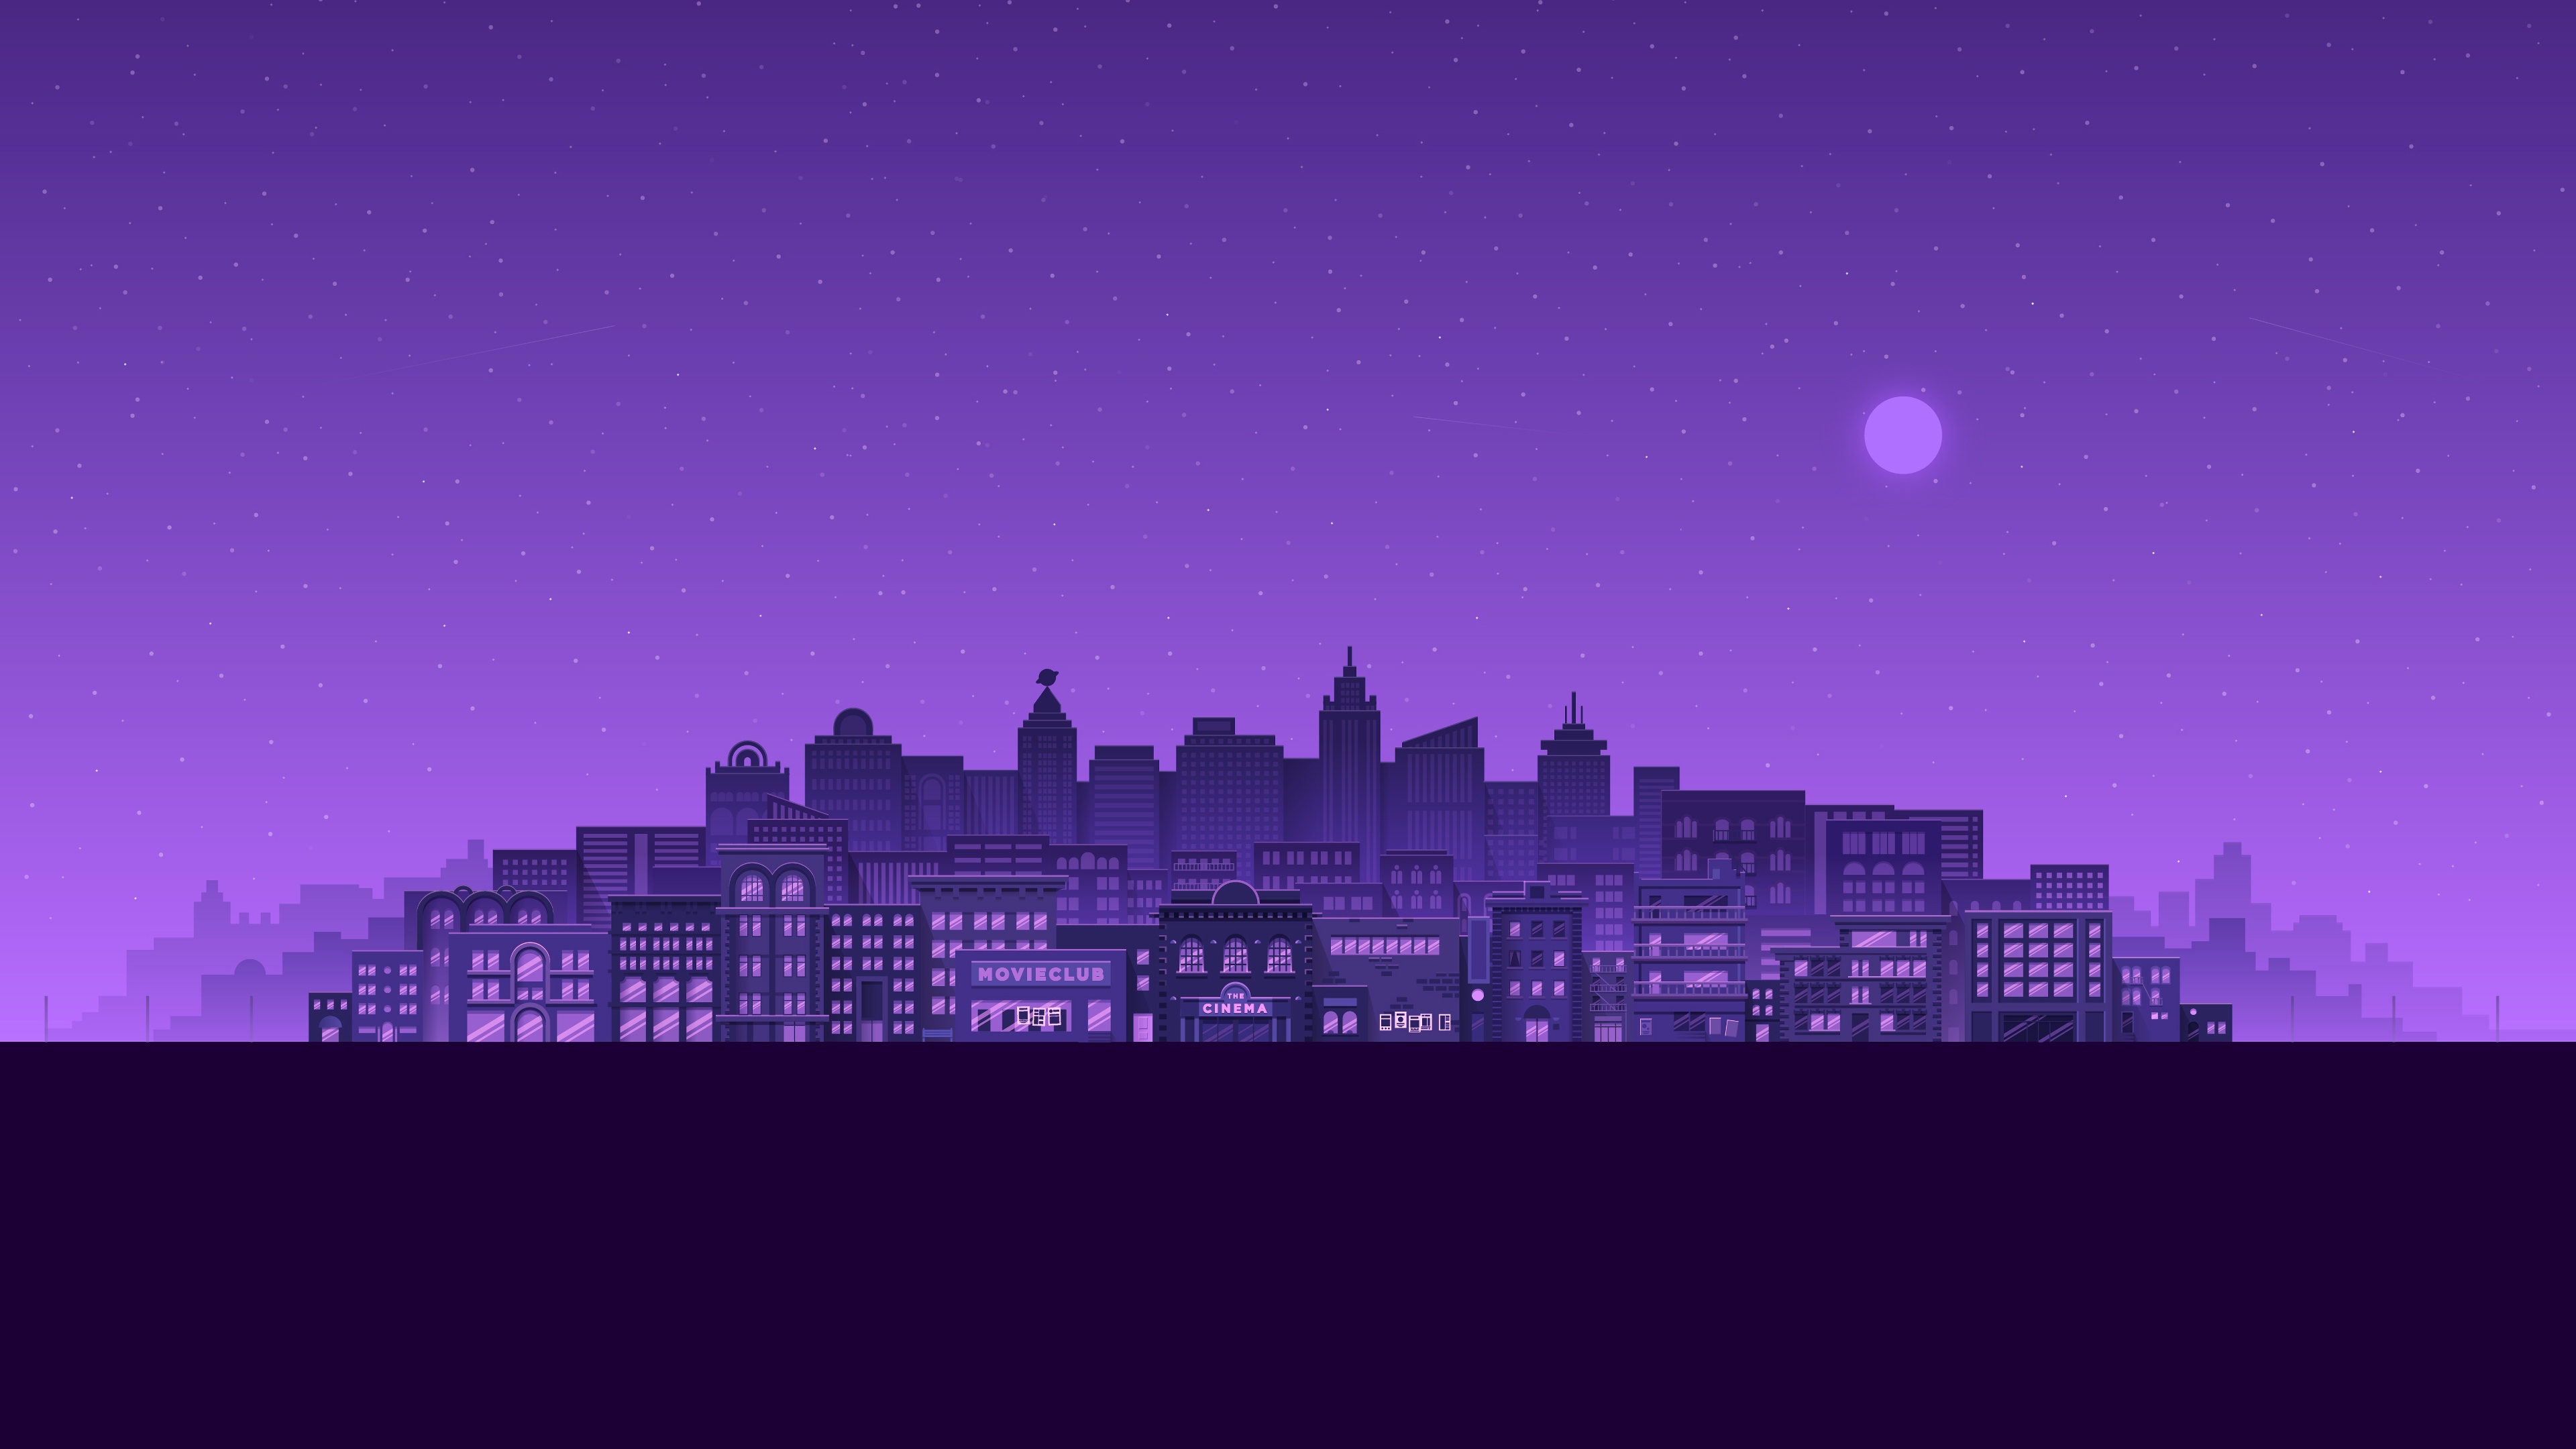 Thành phố tím: Để trốn khỏi sự ồn ào của đời sống đô thị, hãy dành chút thời gian để ngắm nhìn thành phố tím lung linh này. Sự kết hợp giữa sắc tím đậm và ánh đèn đêm sẽ tạo ra một không gian ấn tượng và đầy mê hoặc.